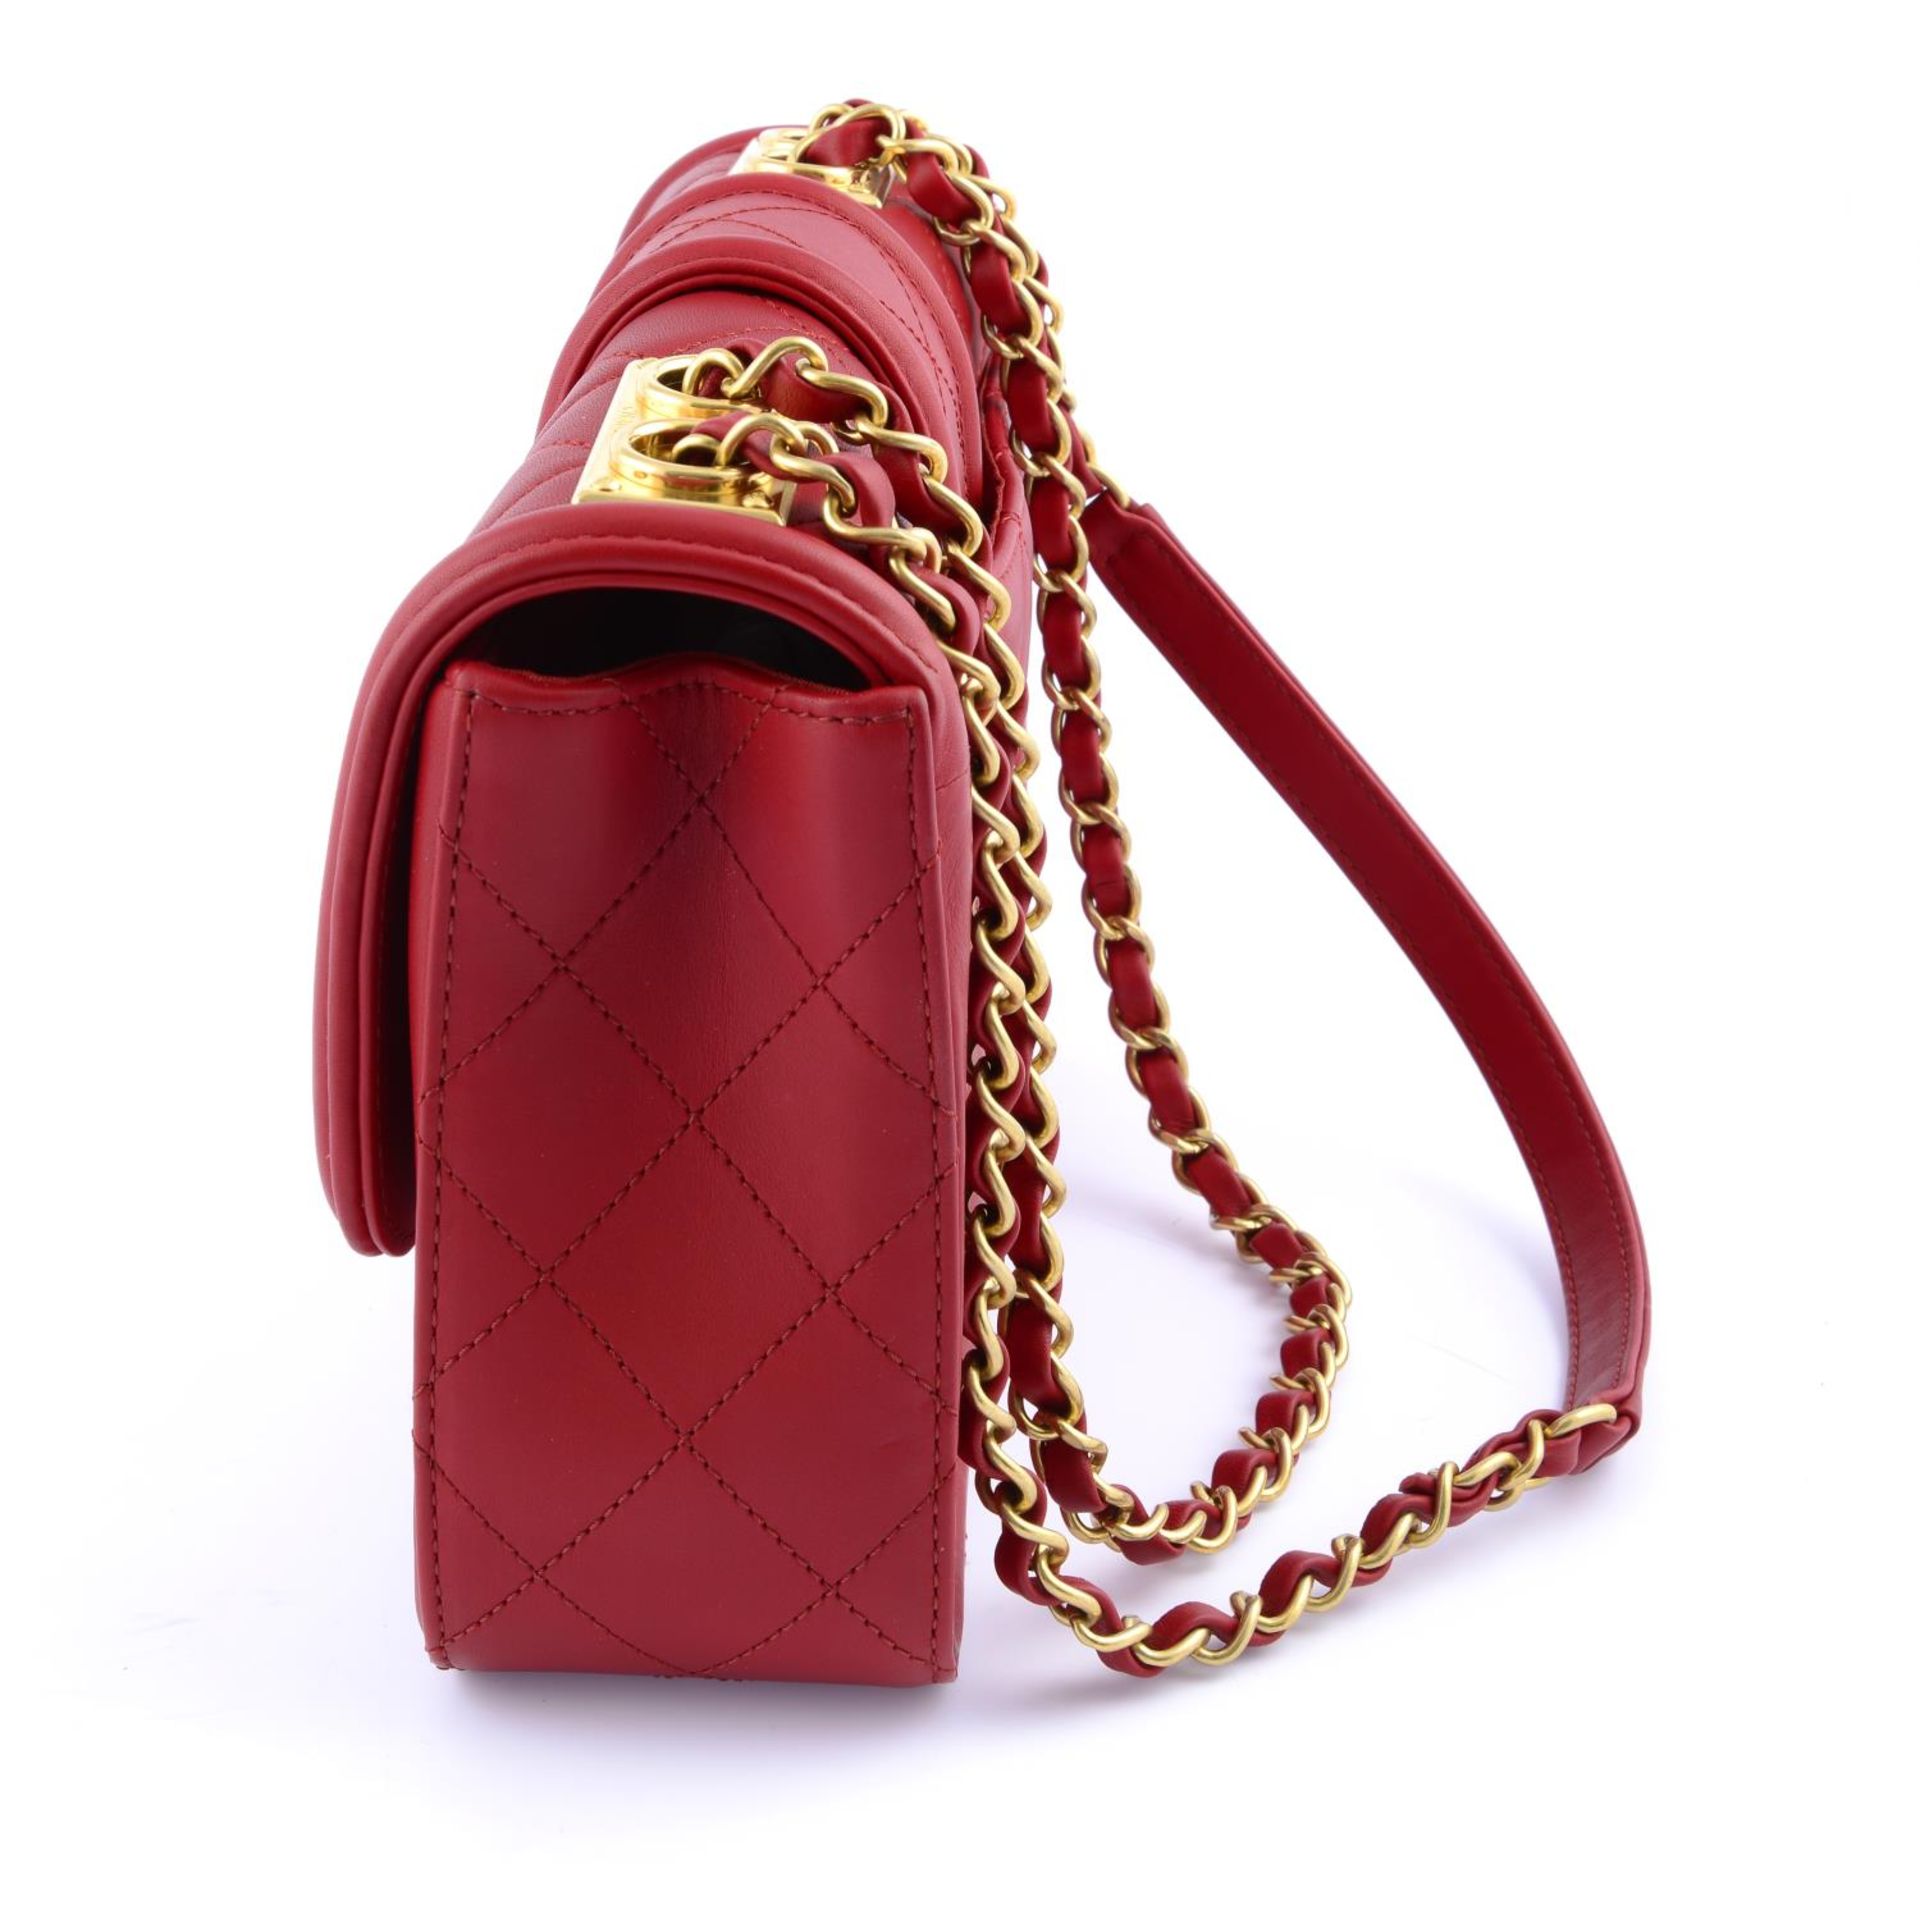 CHANEL - a red quilted Elegant handbag. - Bild 3 aus 4